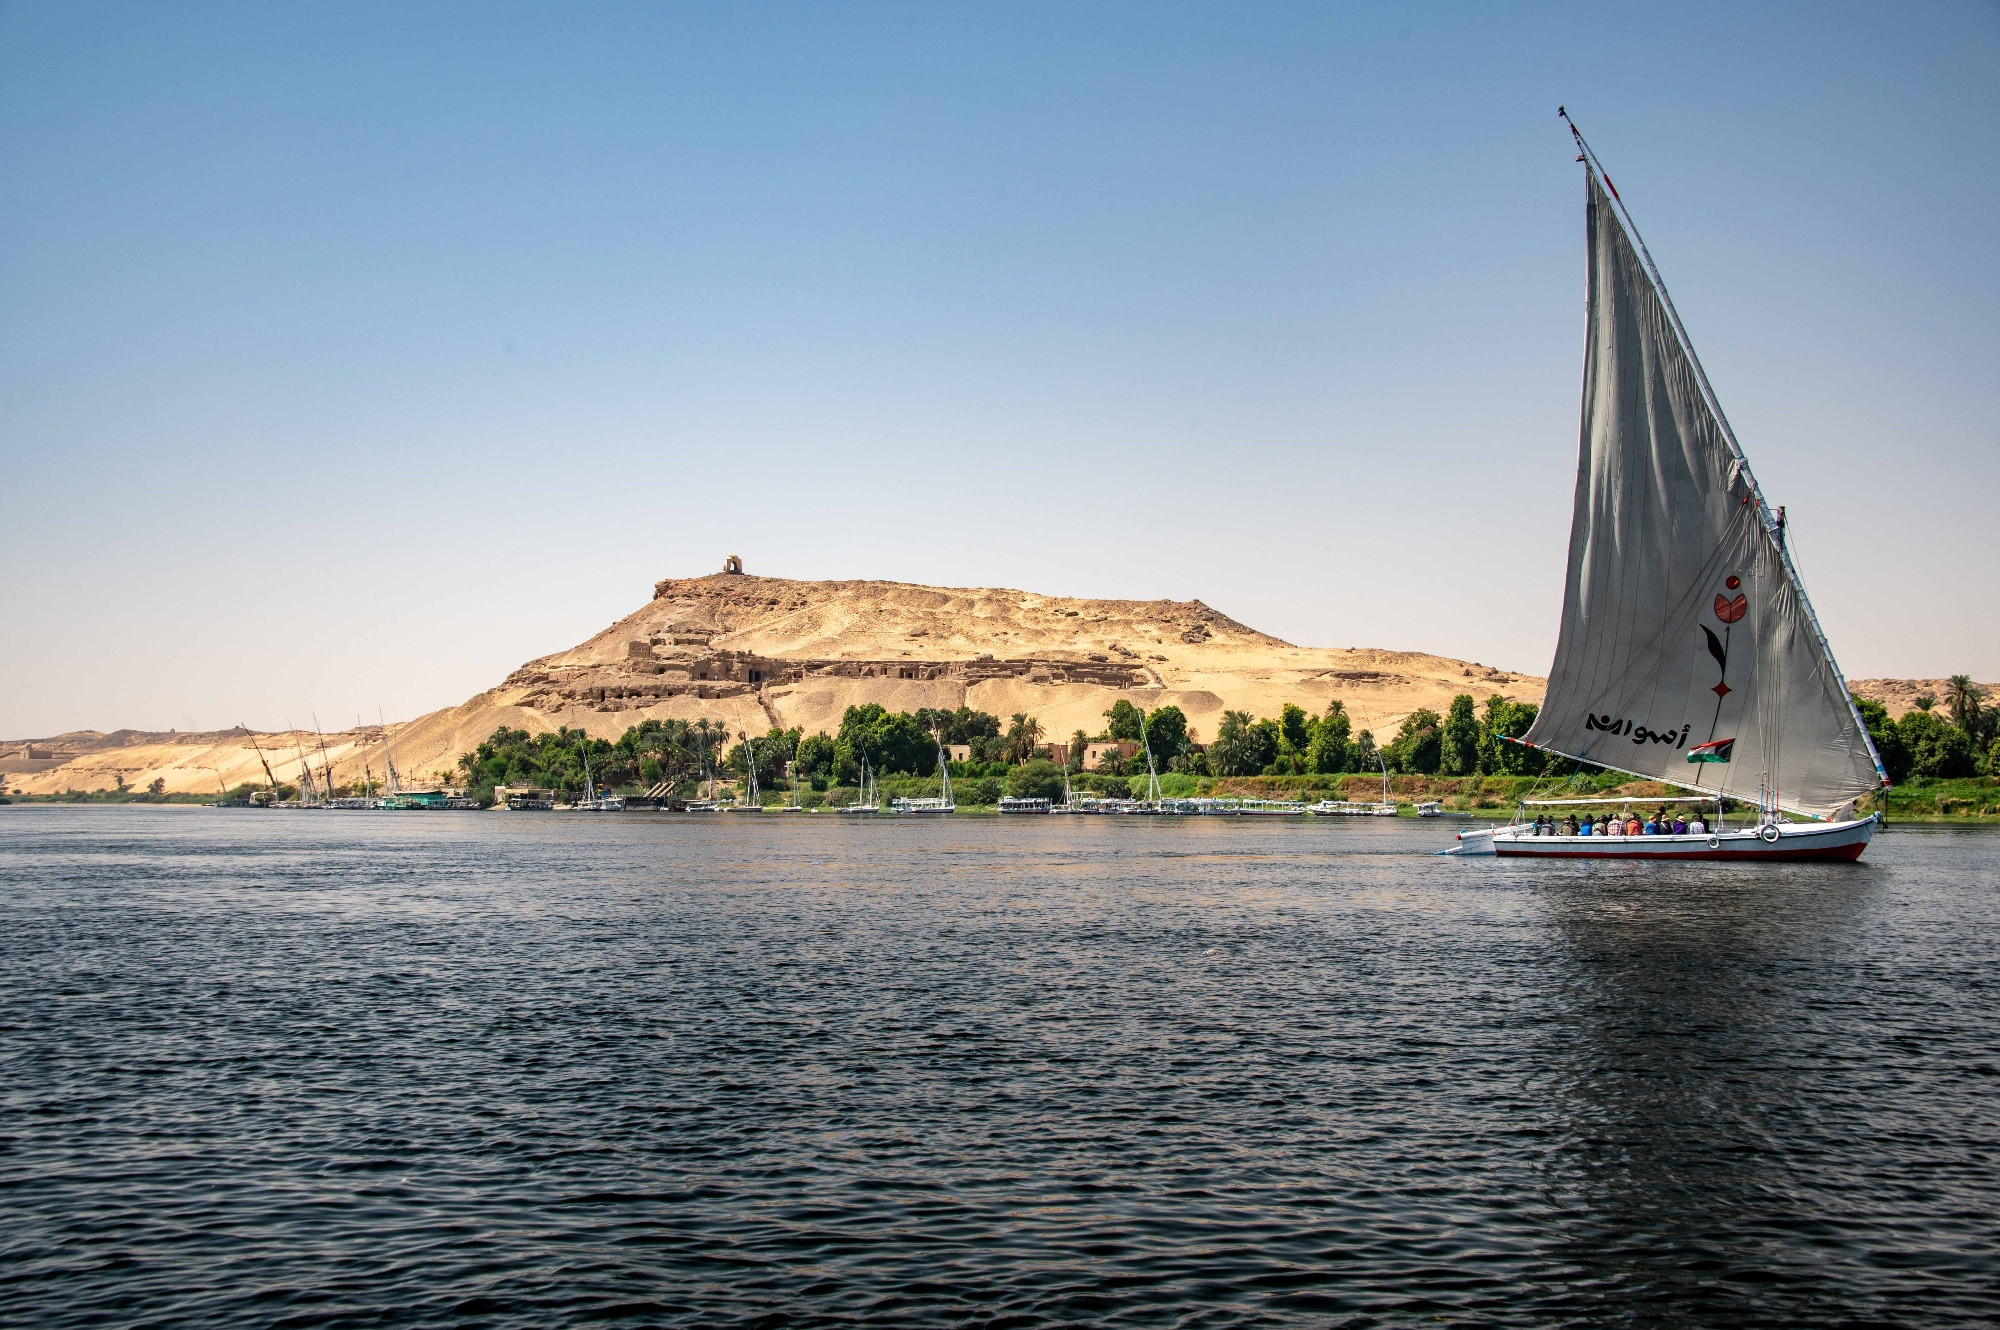 Nile River at Aswan